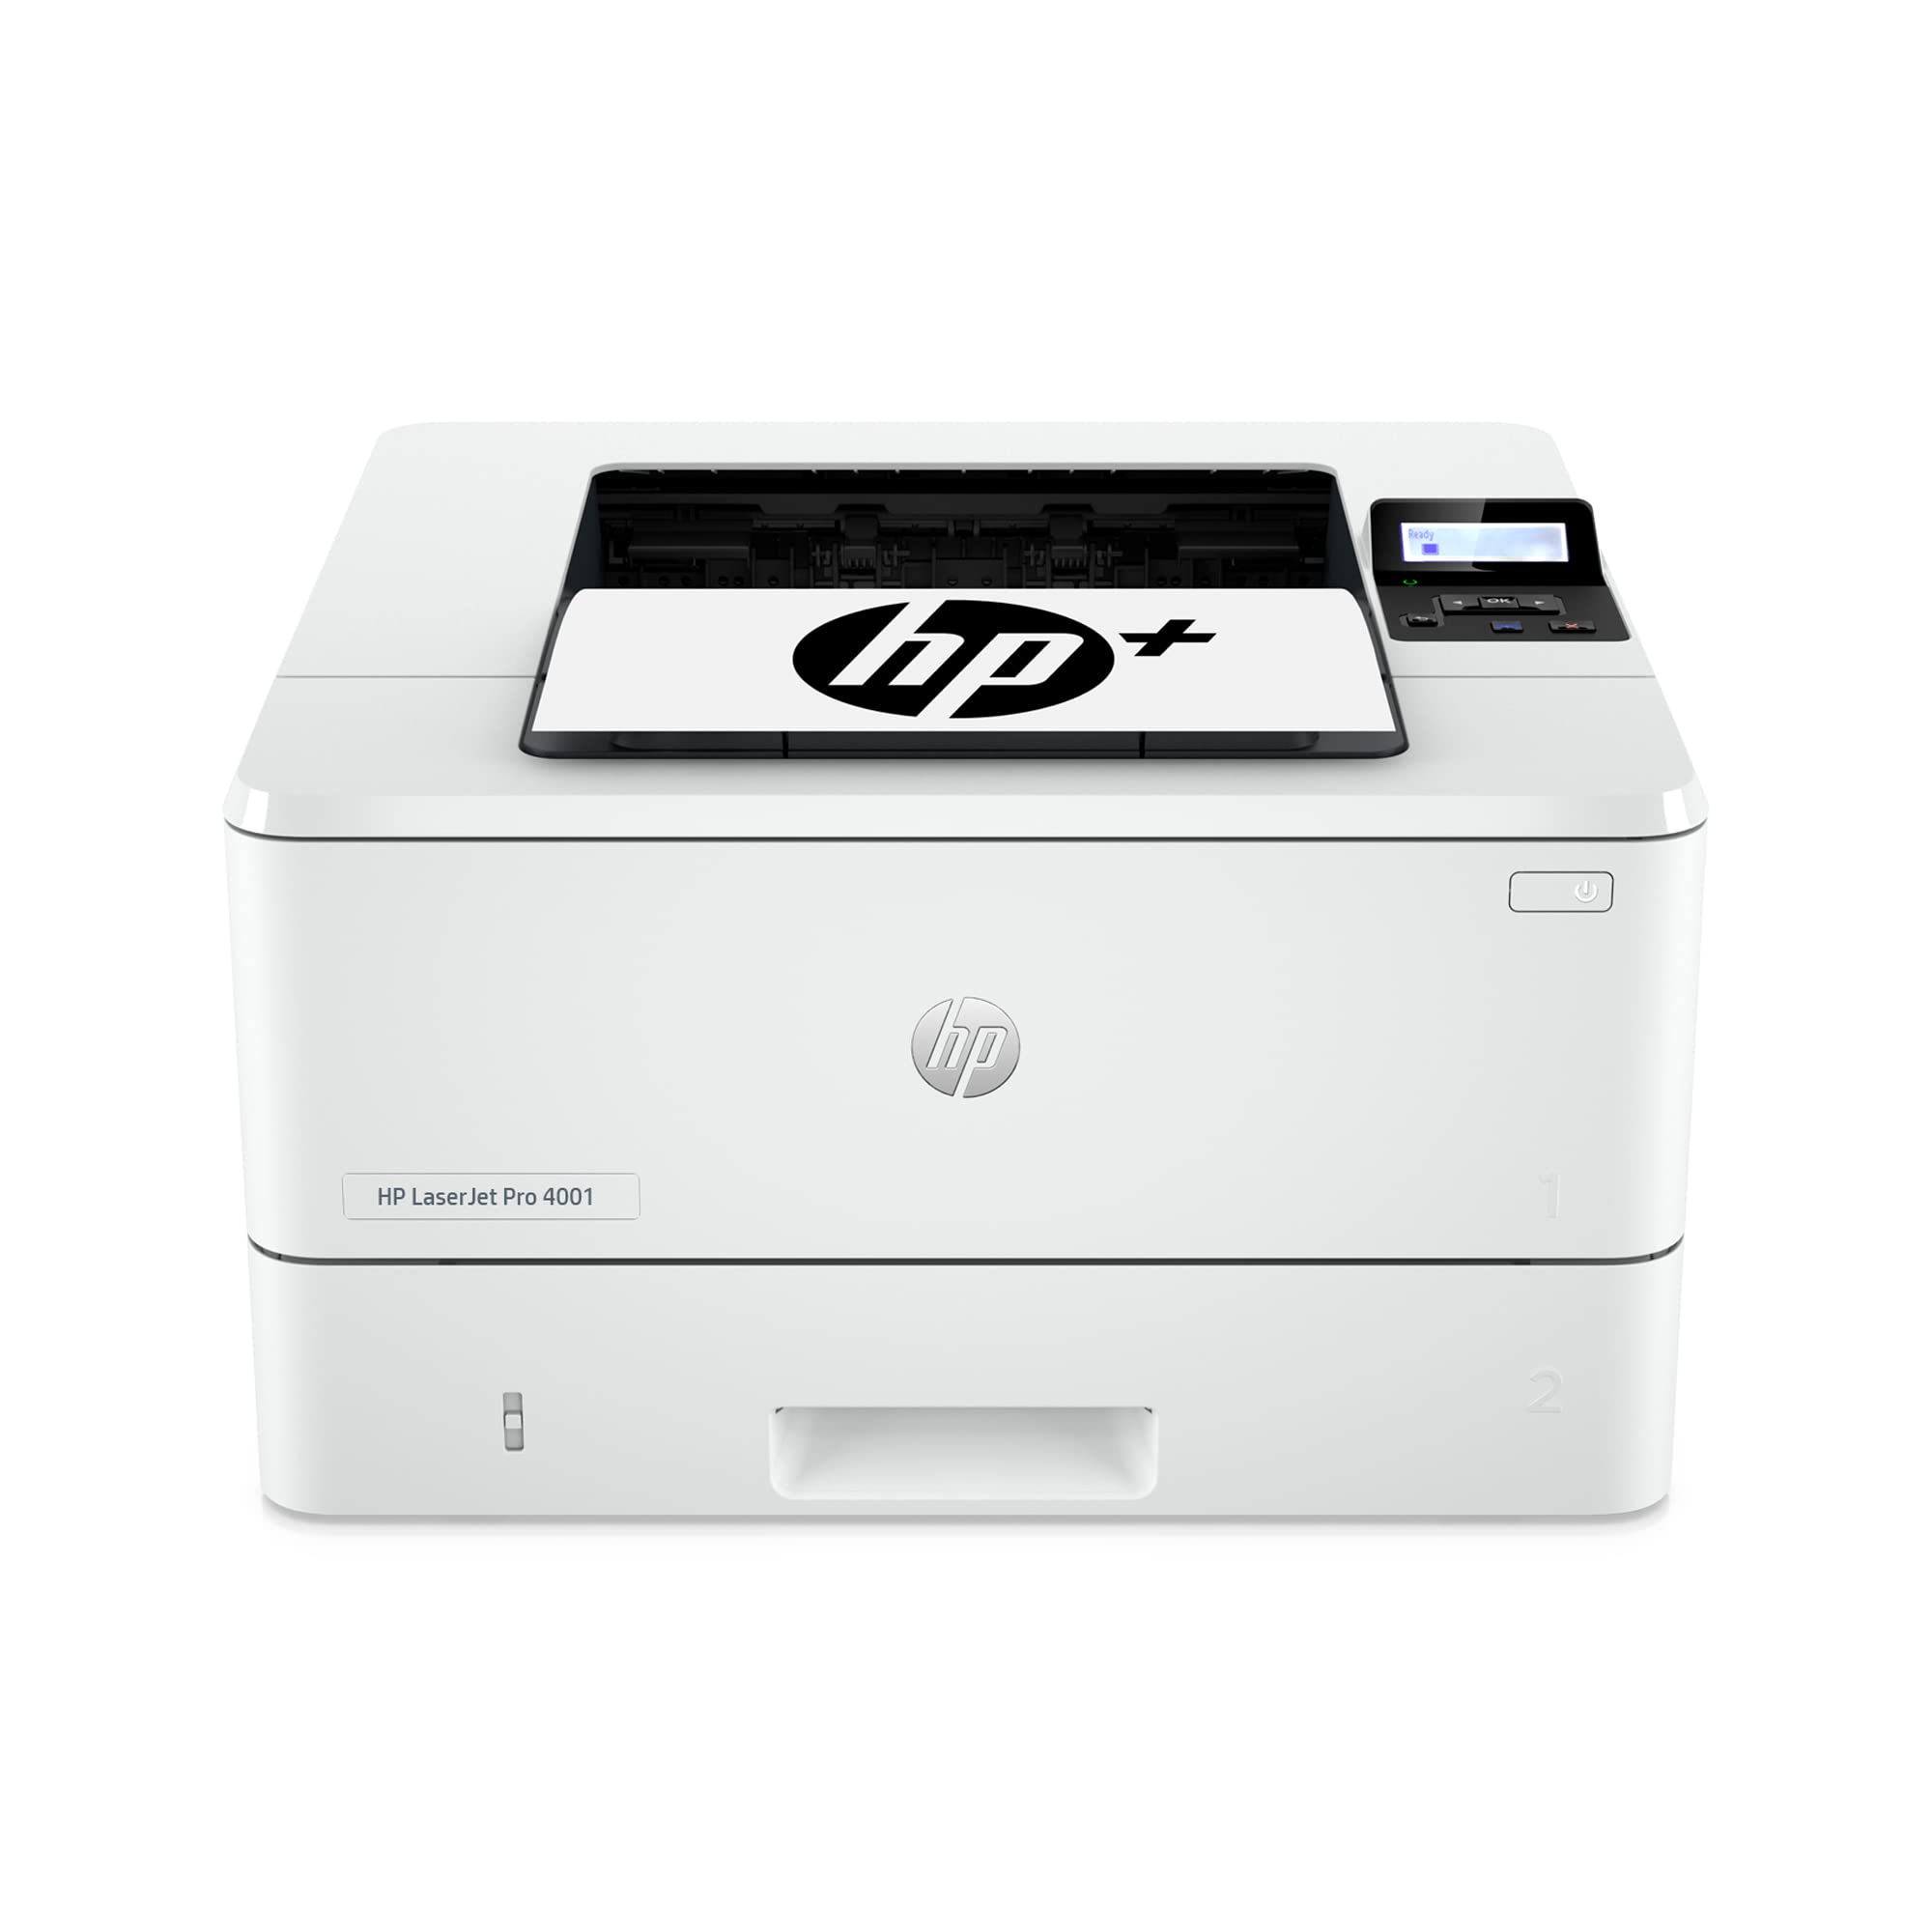 HP LaserJet Pro 4001dwe Impressora sem fio em preto e branco com + recursos de escritório inteligente